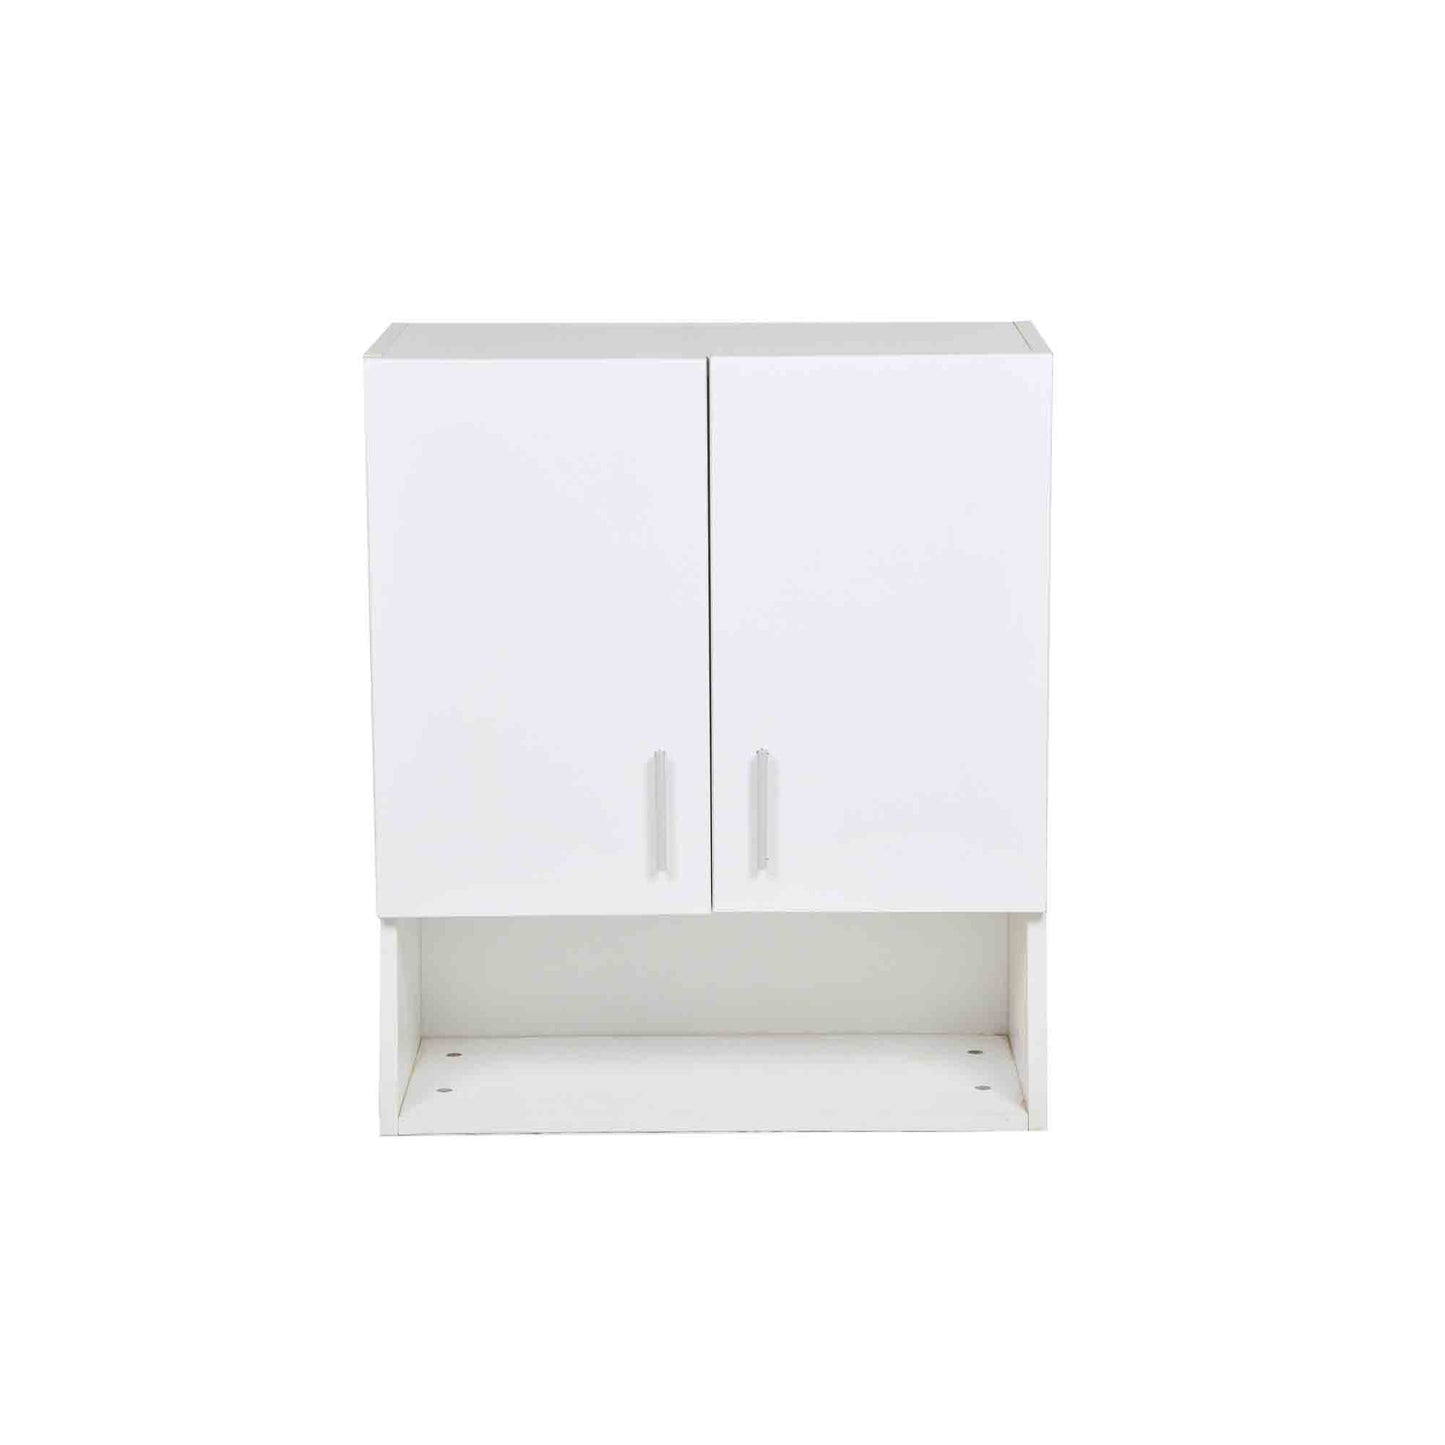 white storage cabinet